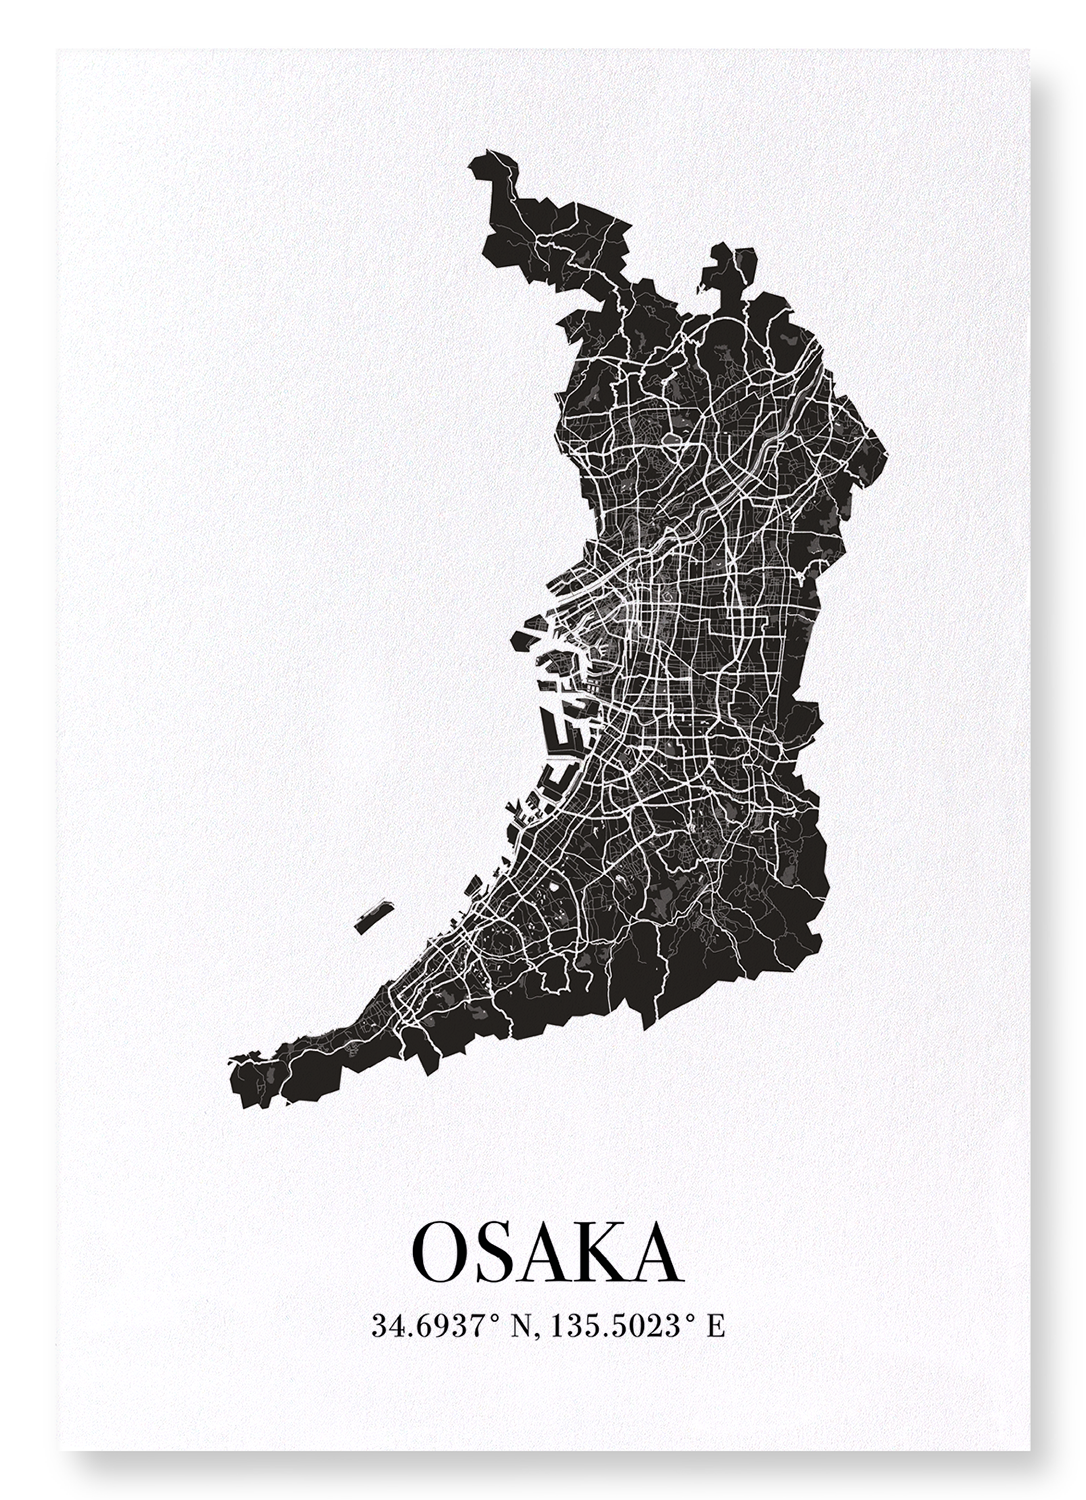 OSAKA CUTOUT: Map Cutout Art Print